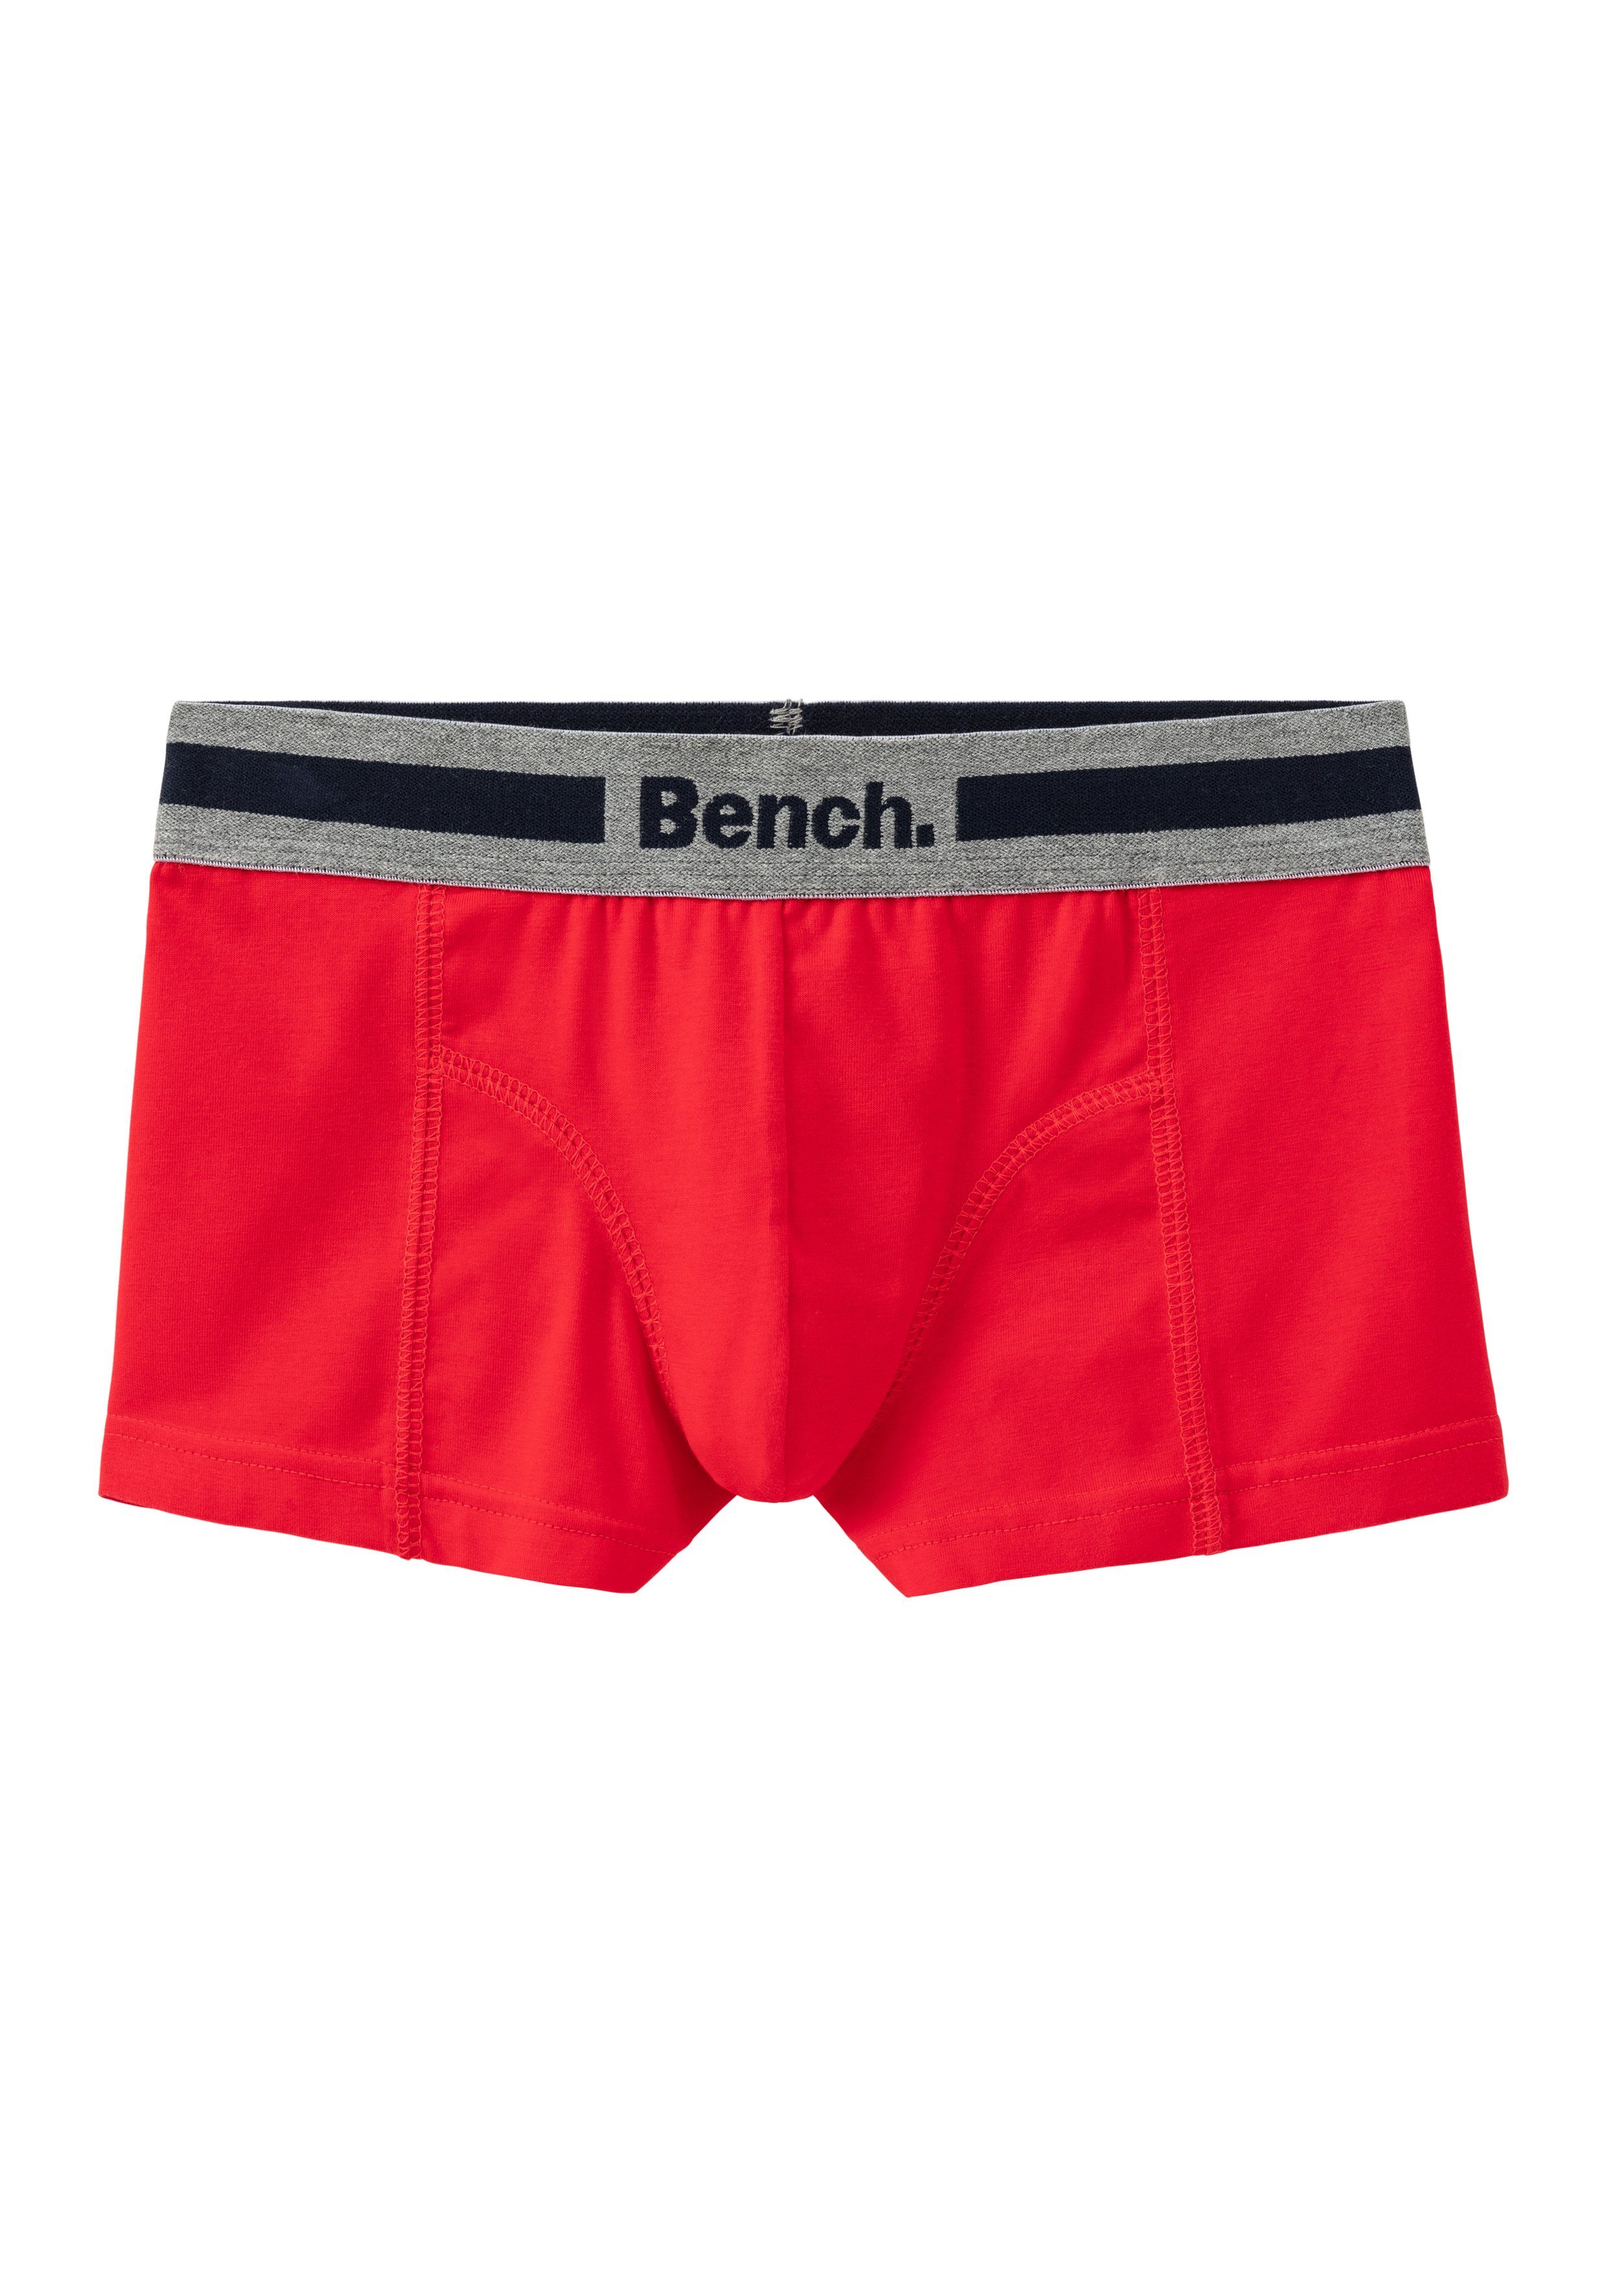 Bench. Boxer (Packung, 4-St) mit grau-meliert, Overlock-Nähten navy, rot, vorn weiß